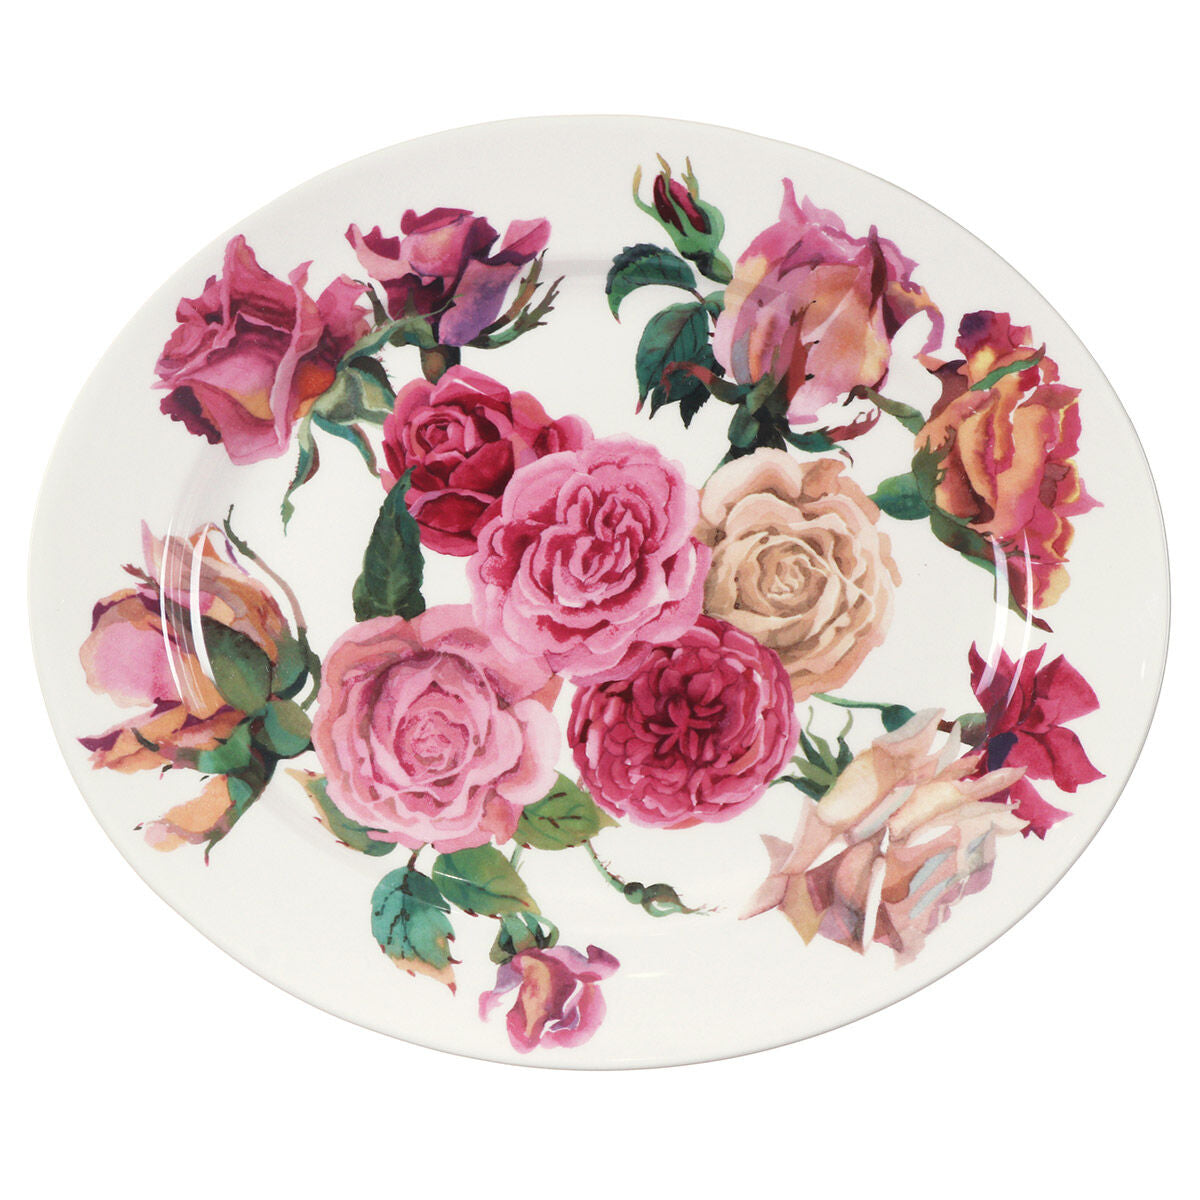 Roses All My Life Medium Oval Platter